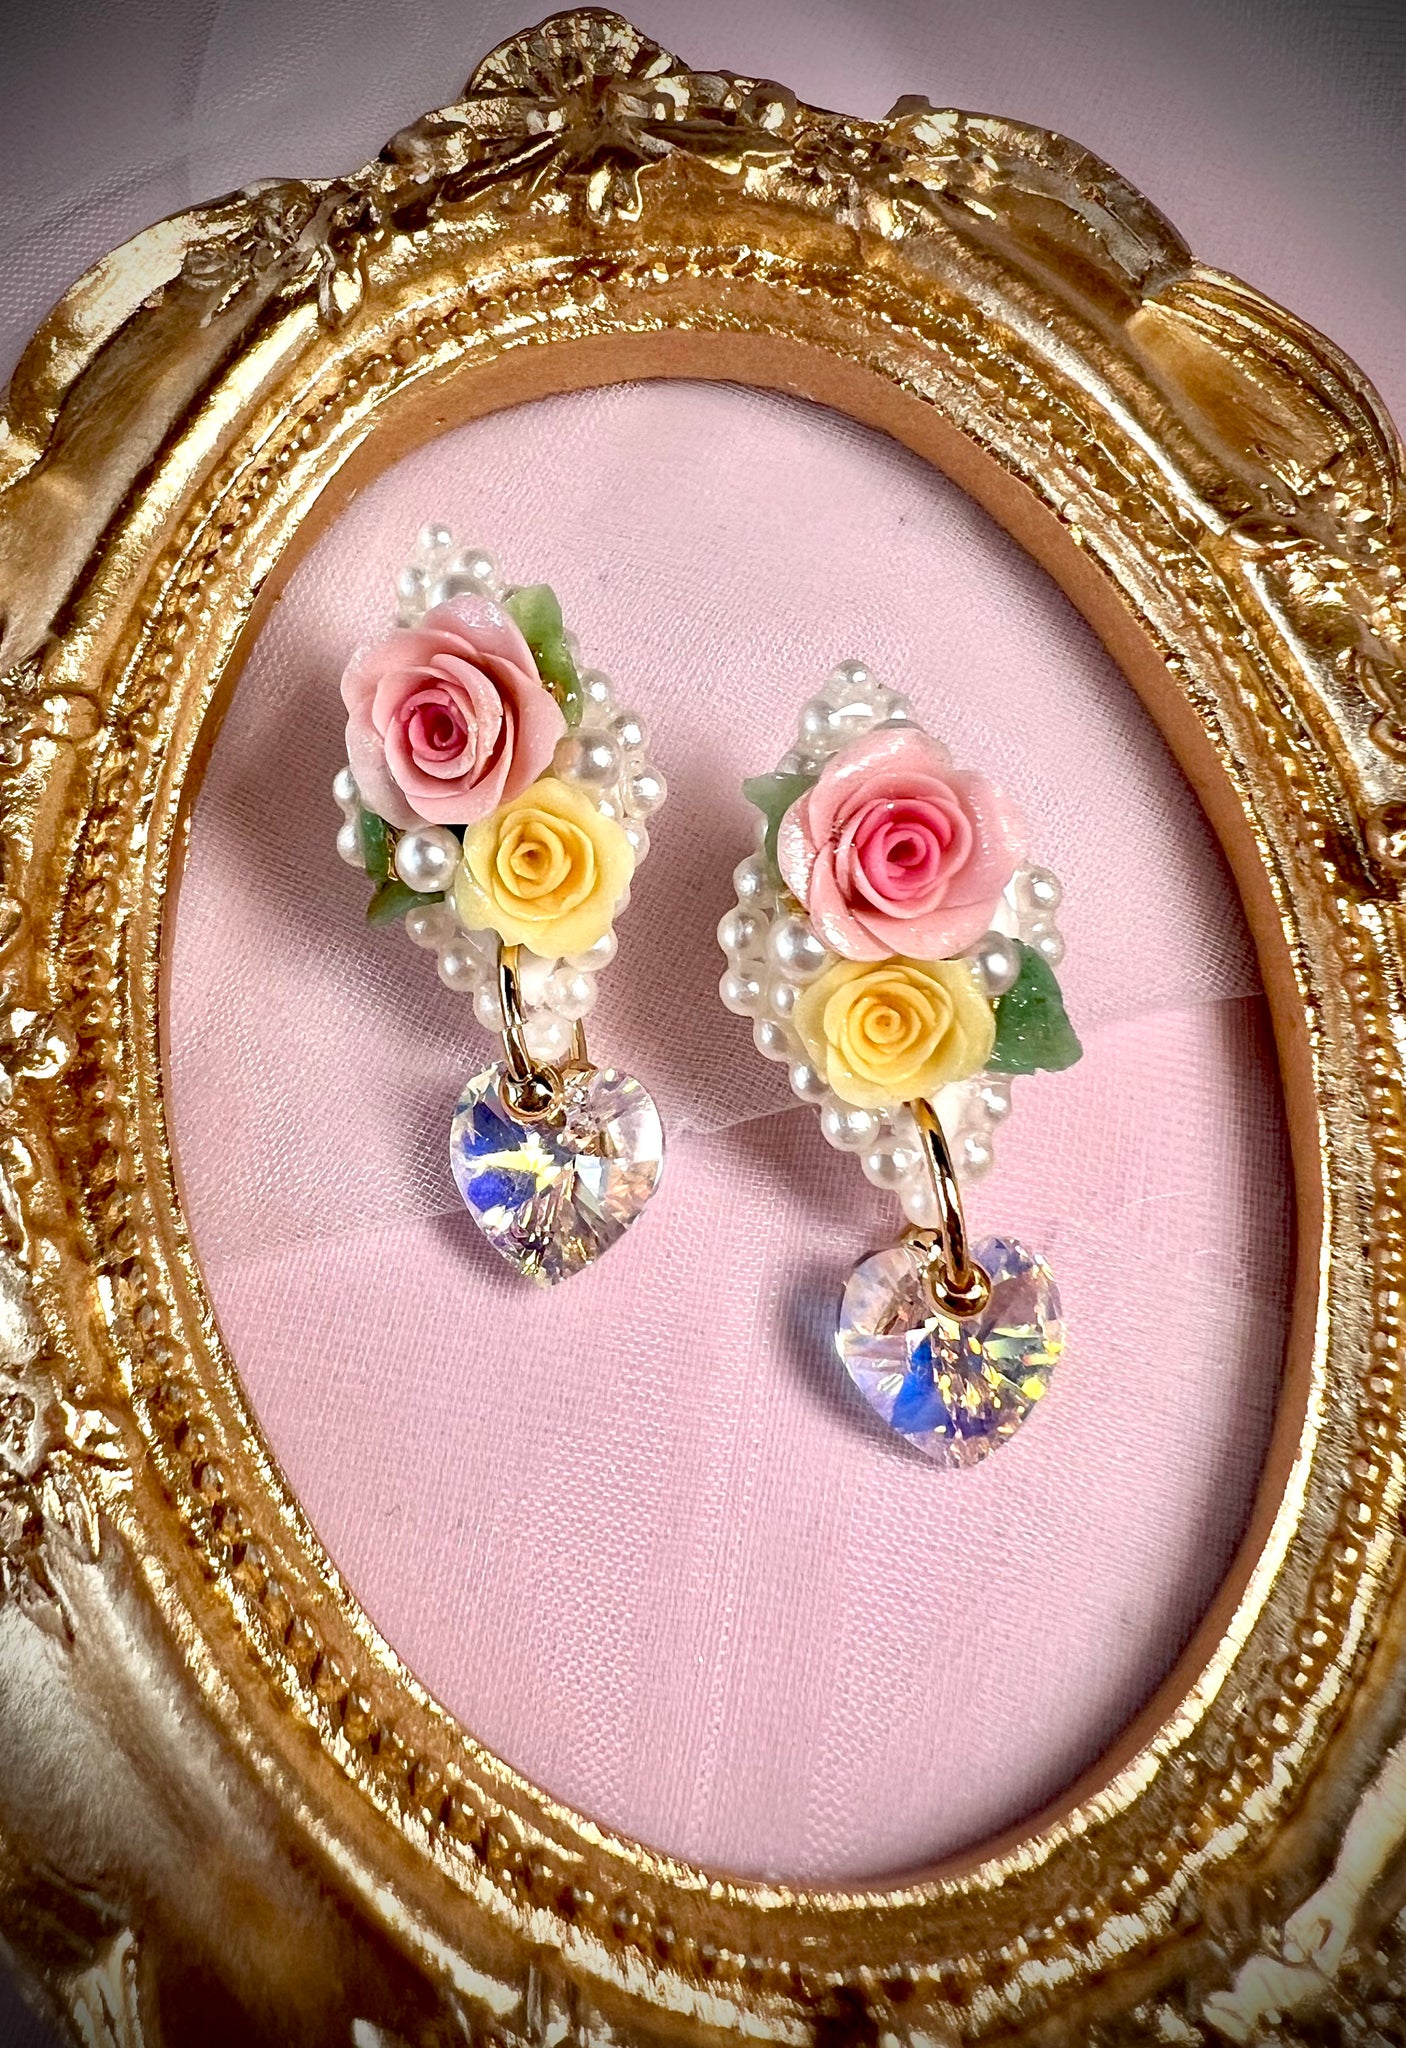 My love in Roses Earrings